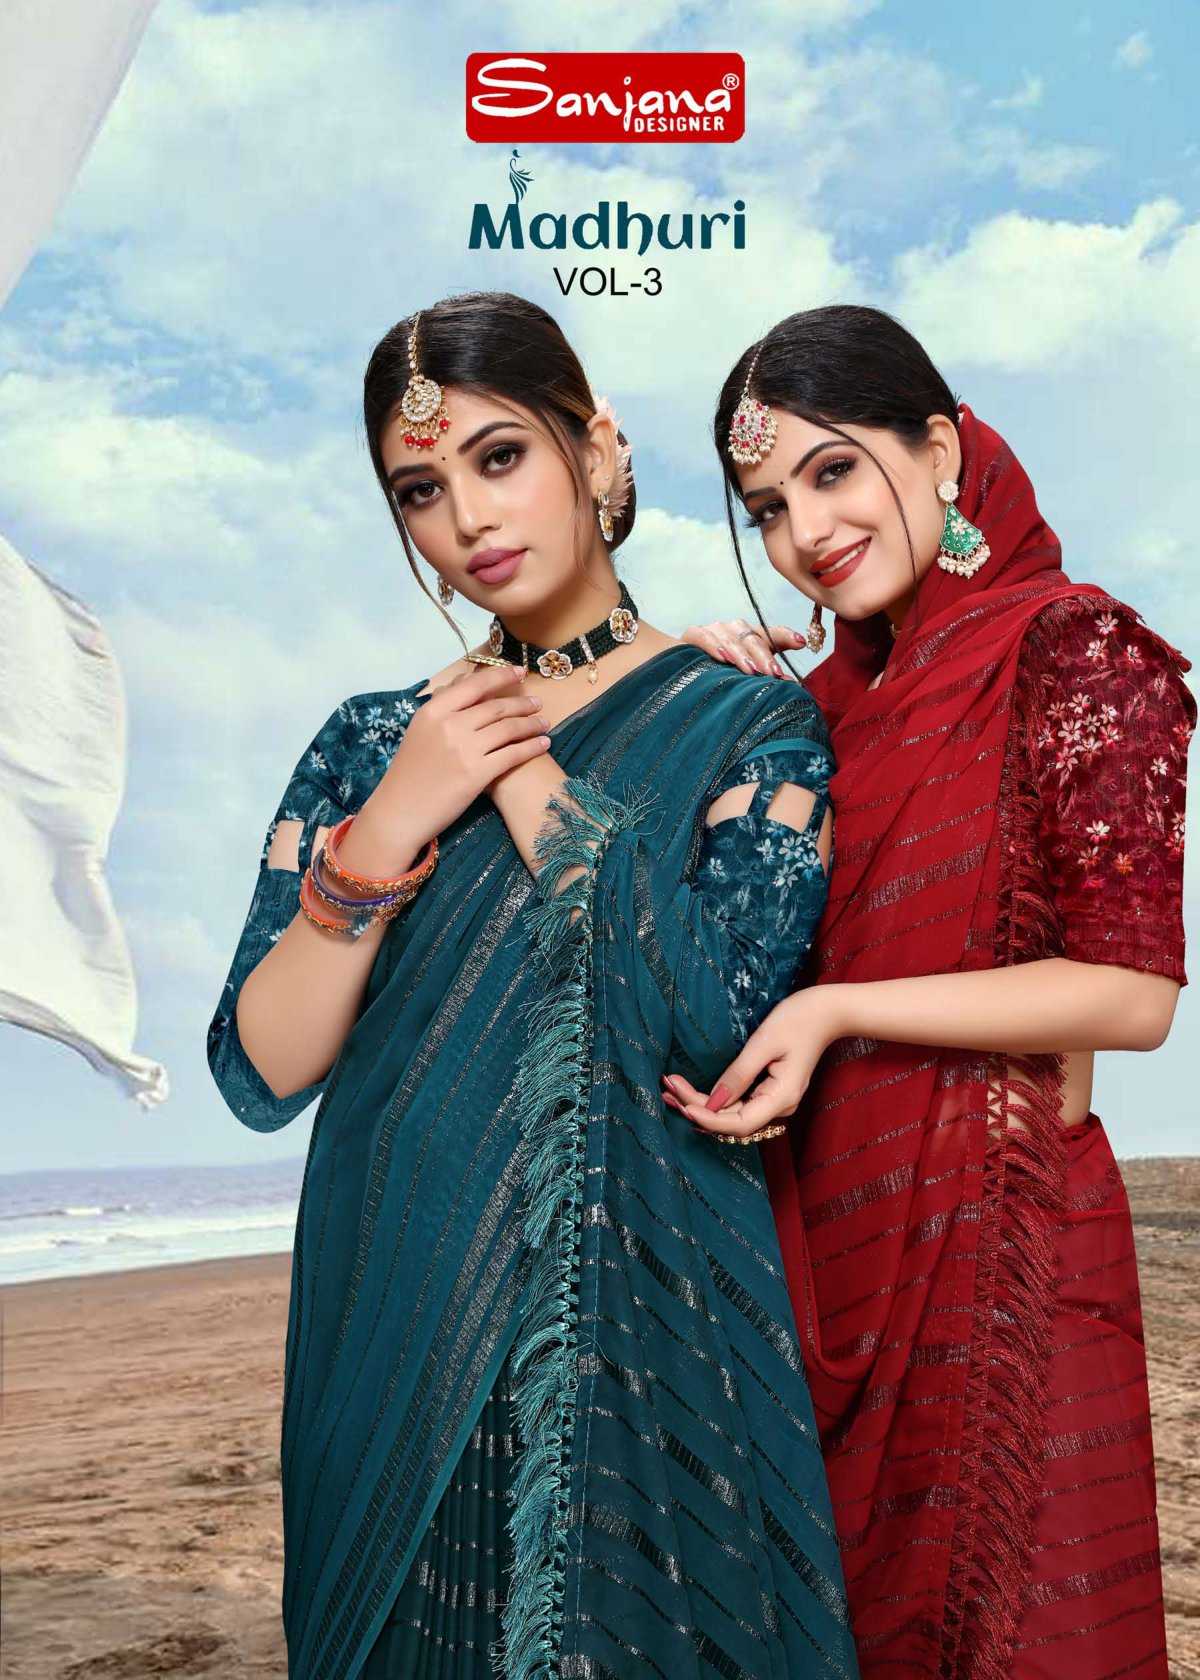 madhuri vol 3 by sanjana designer weightless amazing fancy work sarees